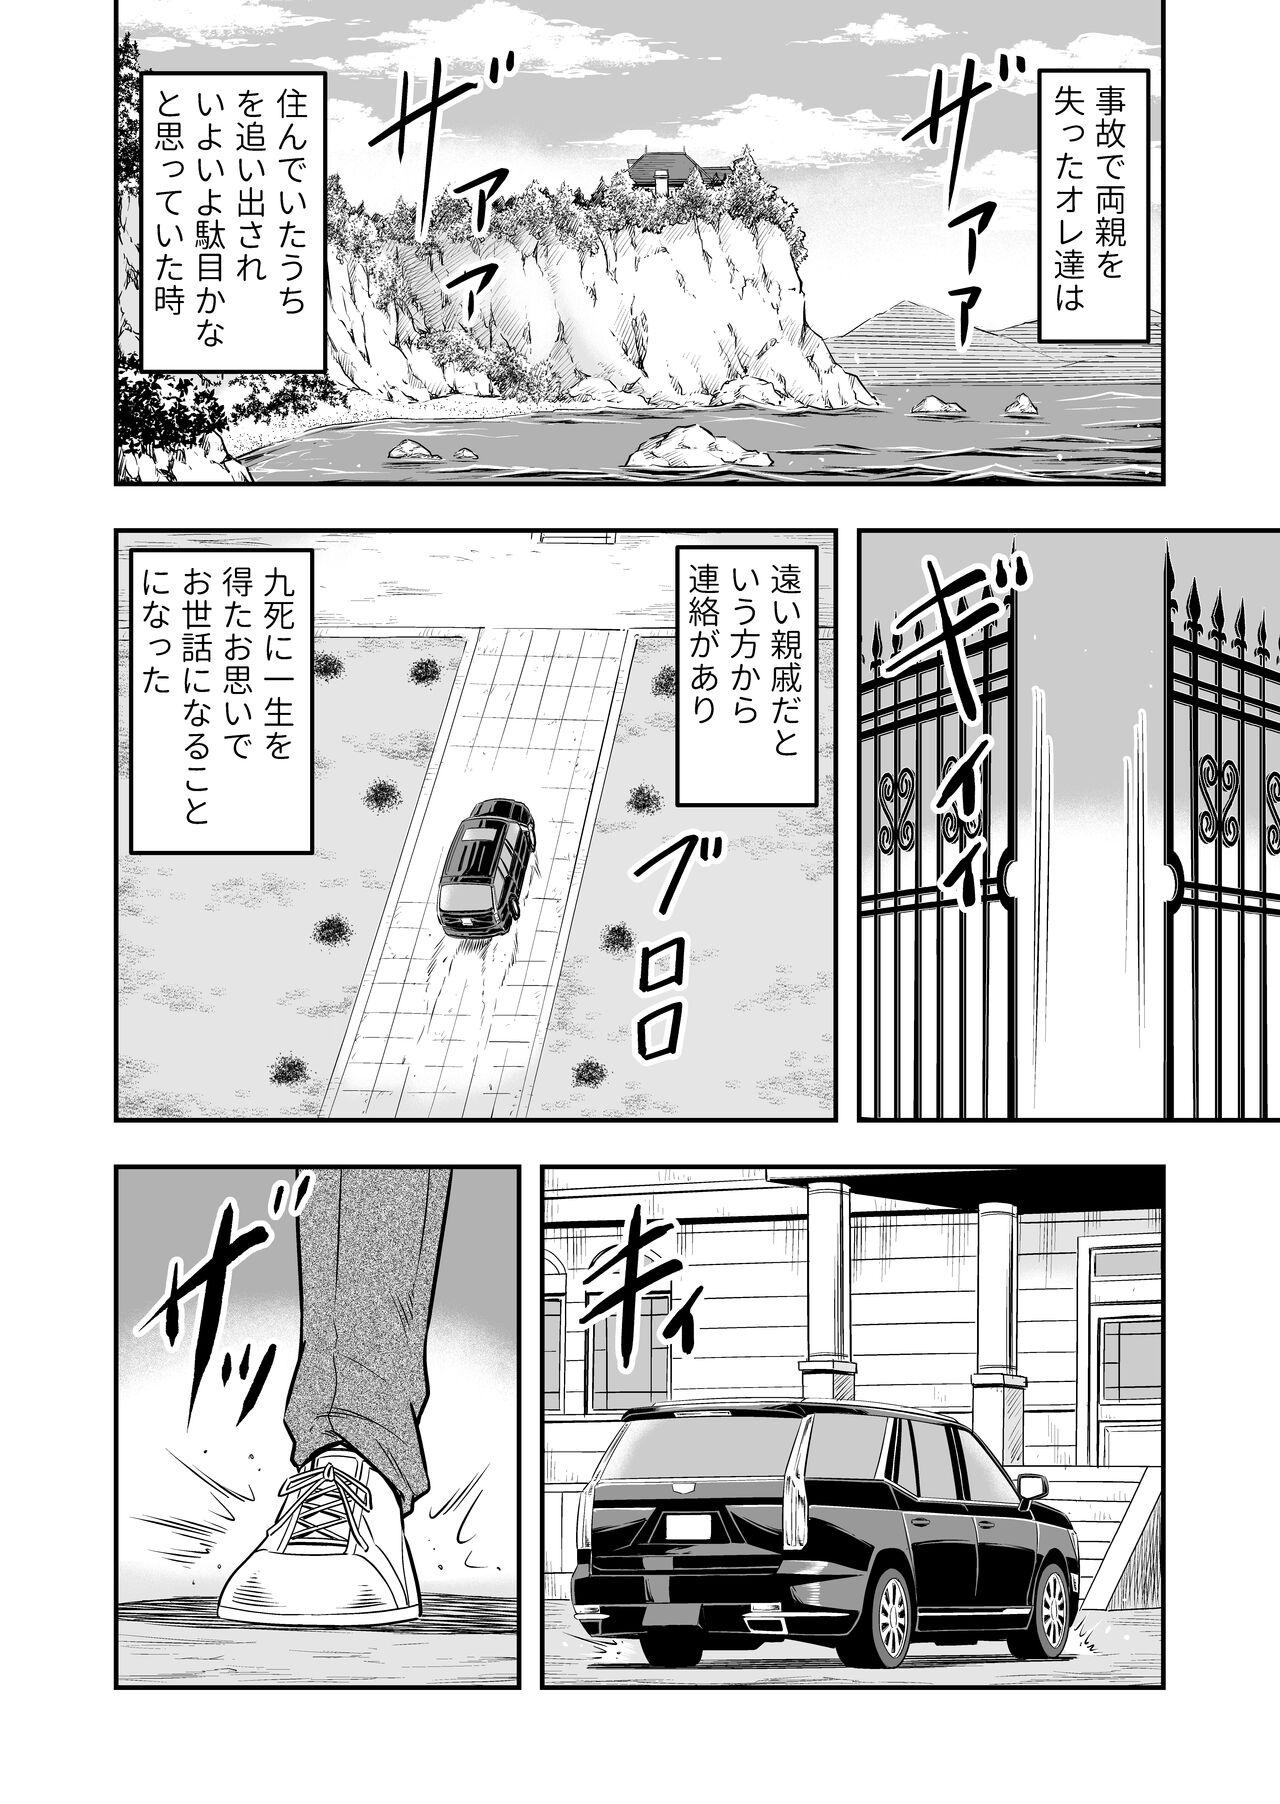 Blowing atashi, osu gakigirai da kara otoko no musume ni shite wakarasemasu !! maehen Teentube - Page 8